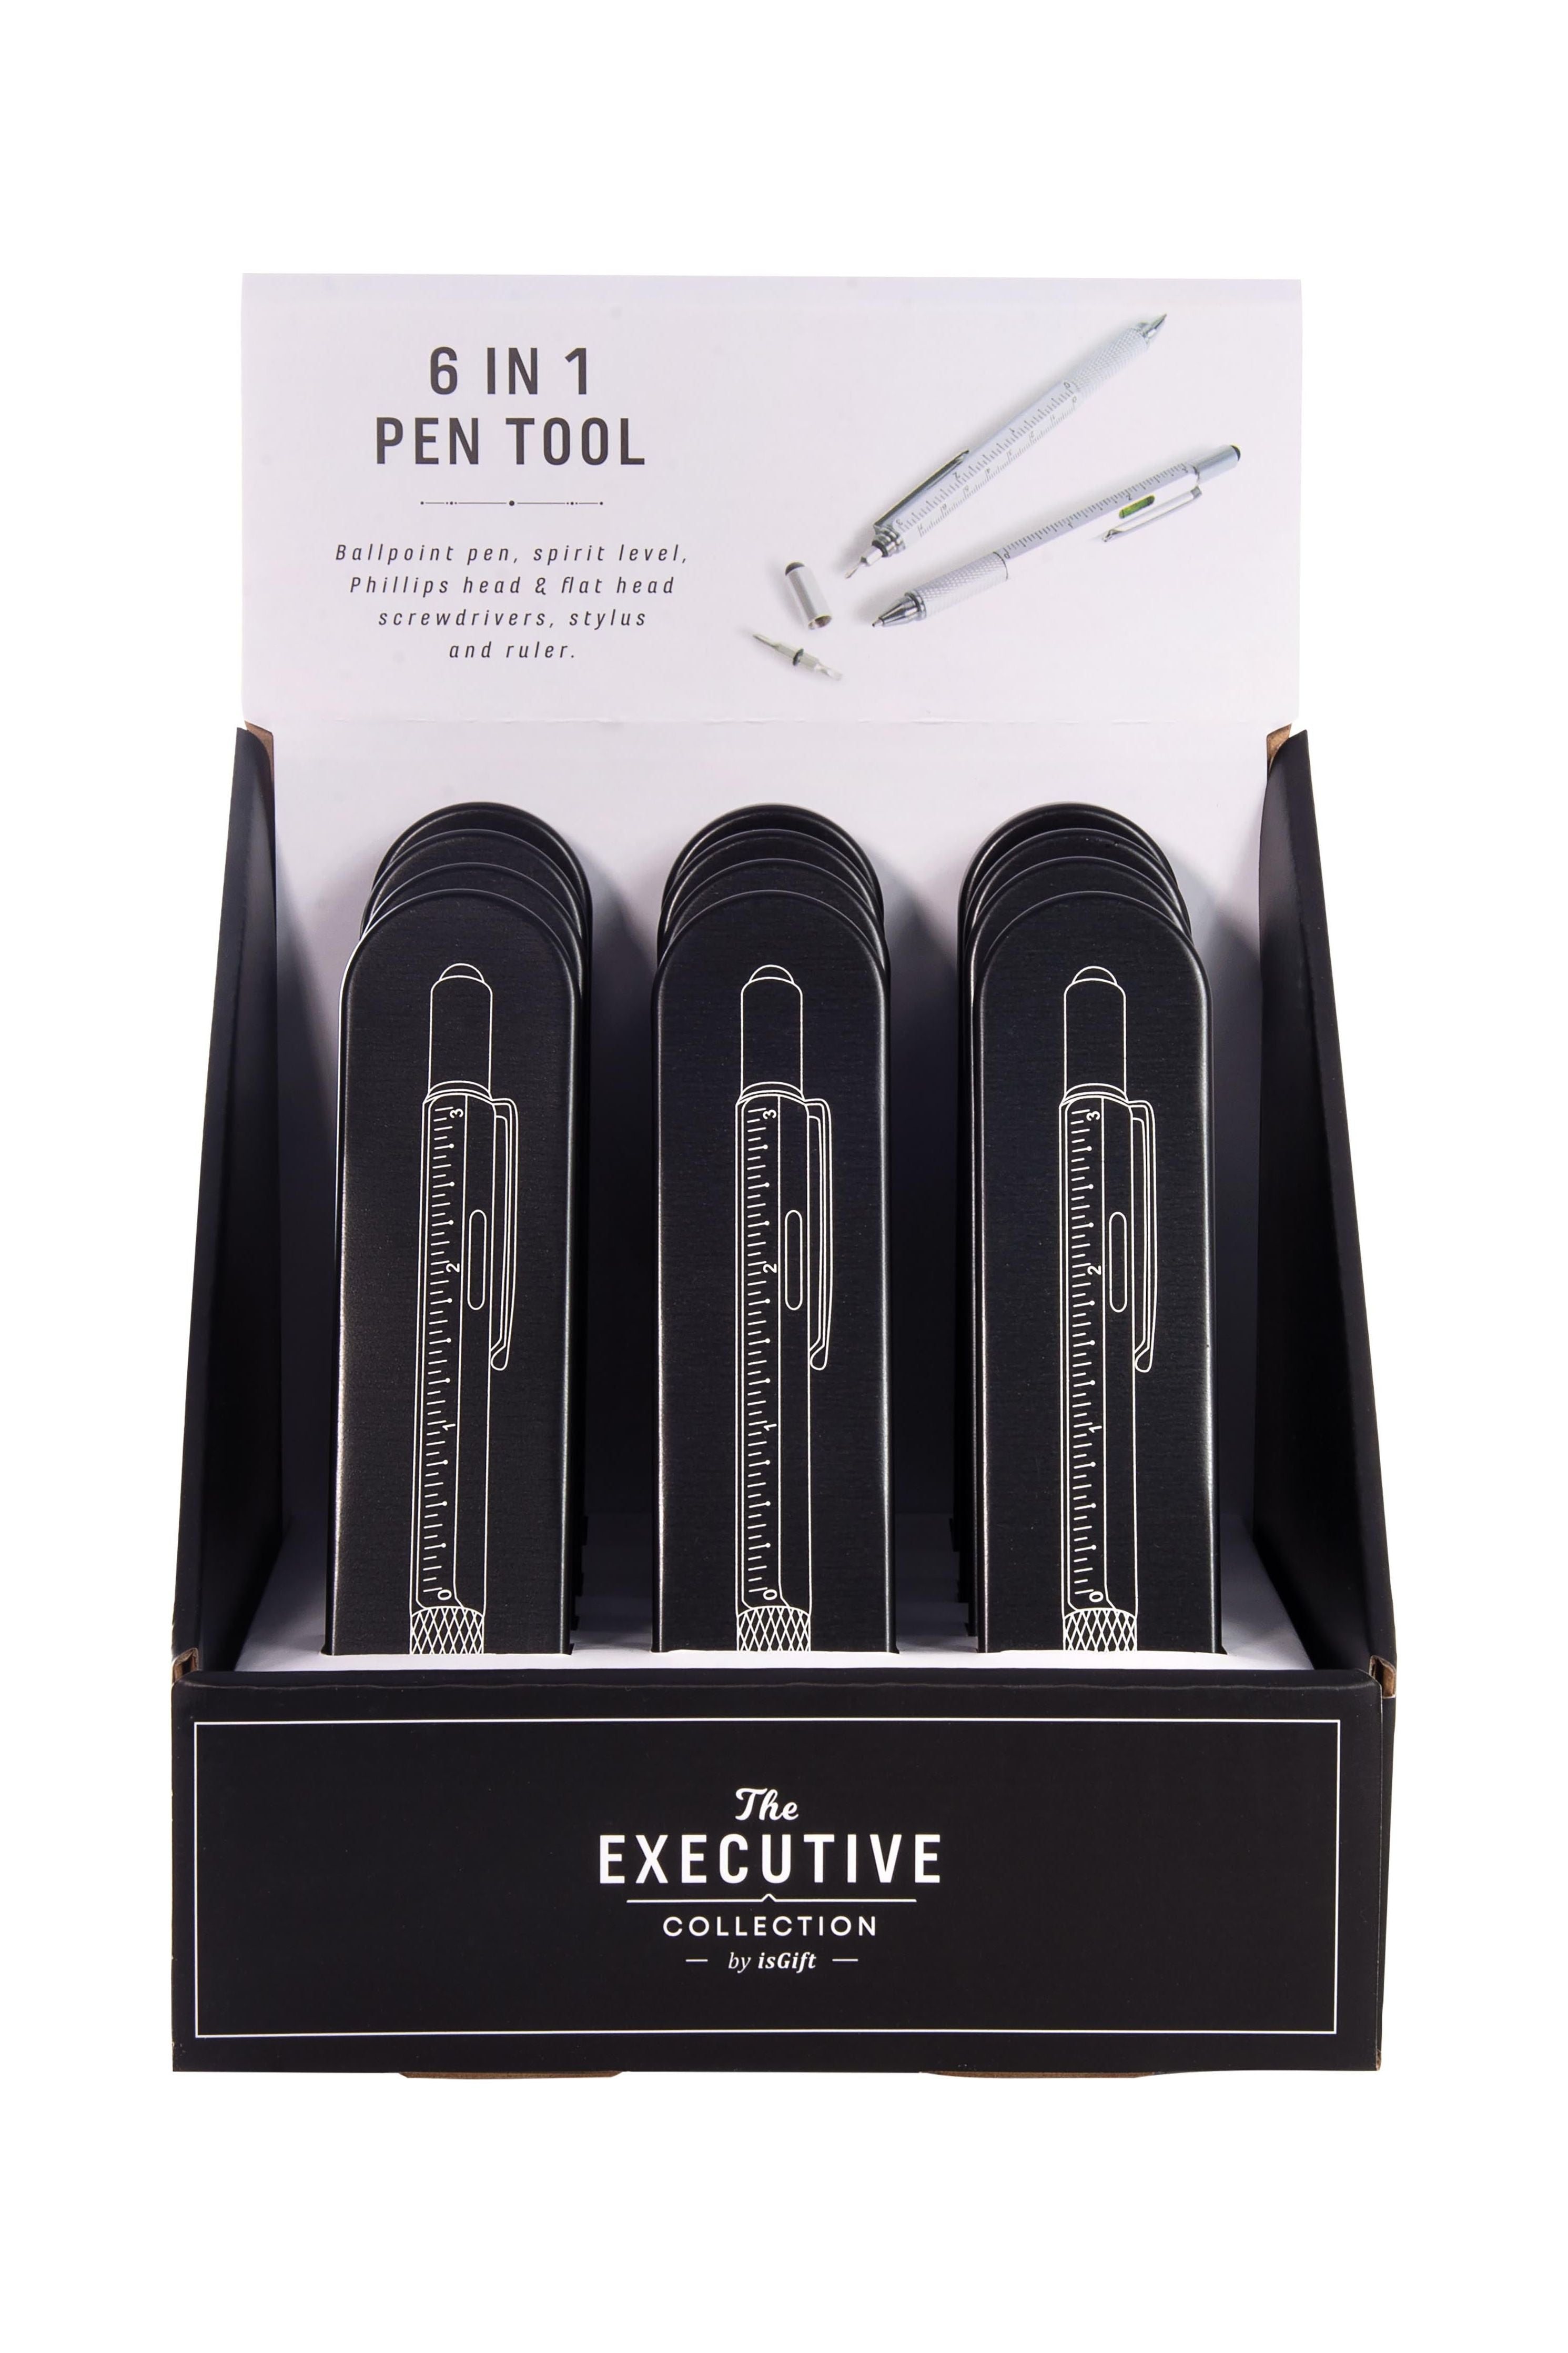 6-In-1 Pen Tool in a Tin